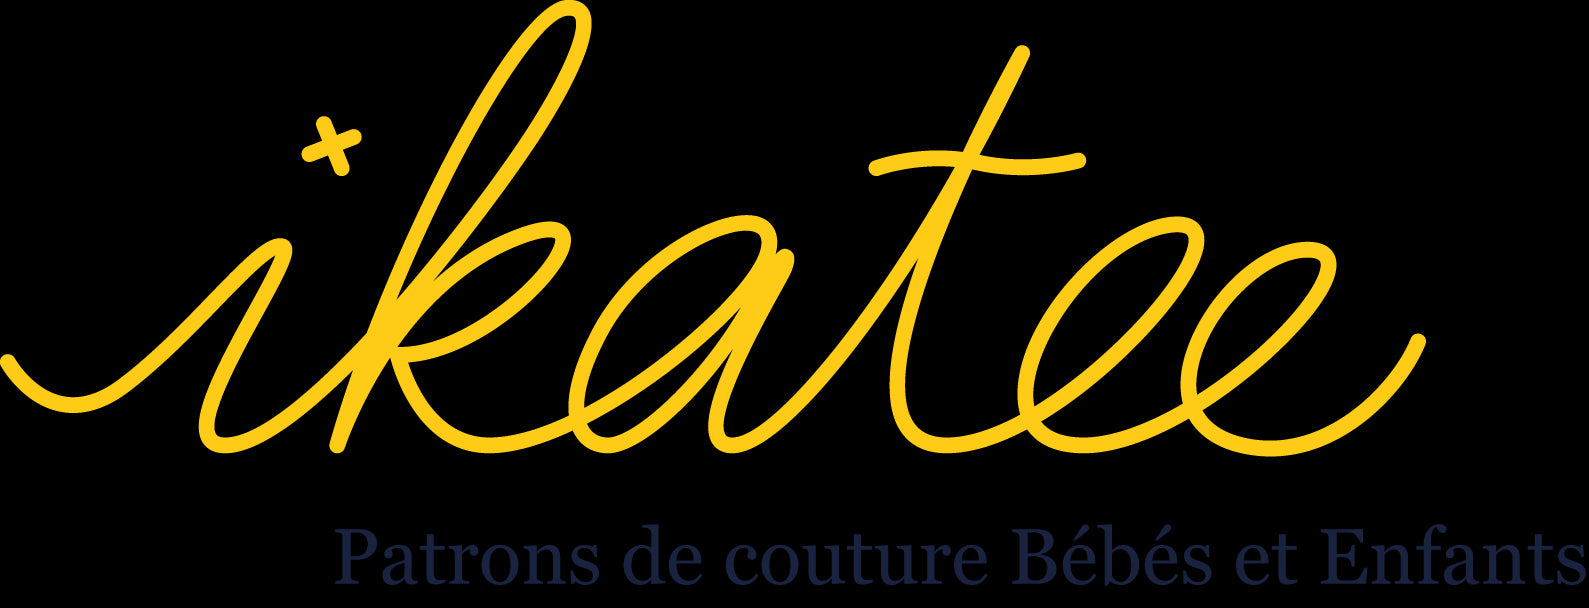 Patrons de couture IKATEE | Gaspard et Léonie Tissus en ligne et Mercerie à TOULOUSE